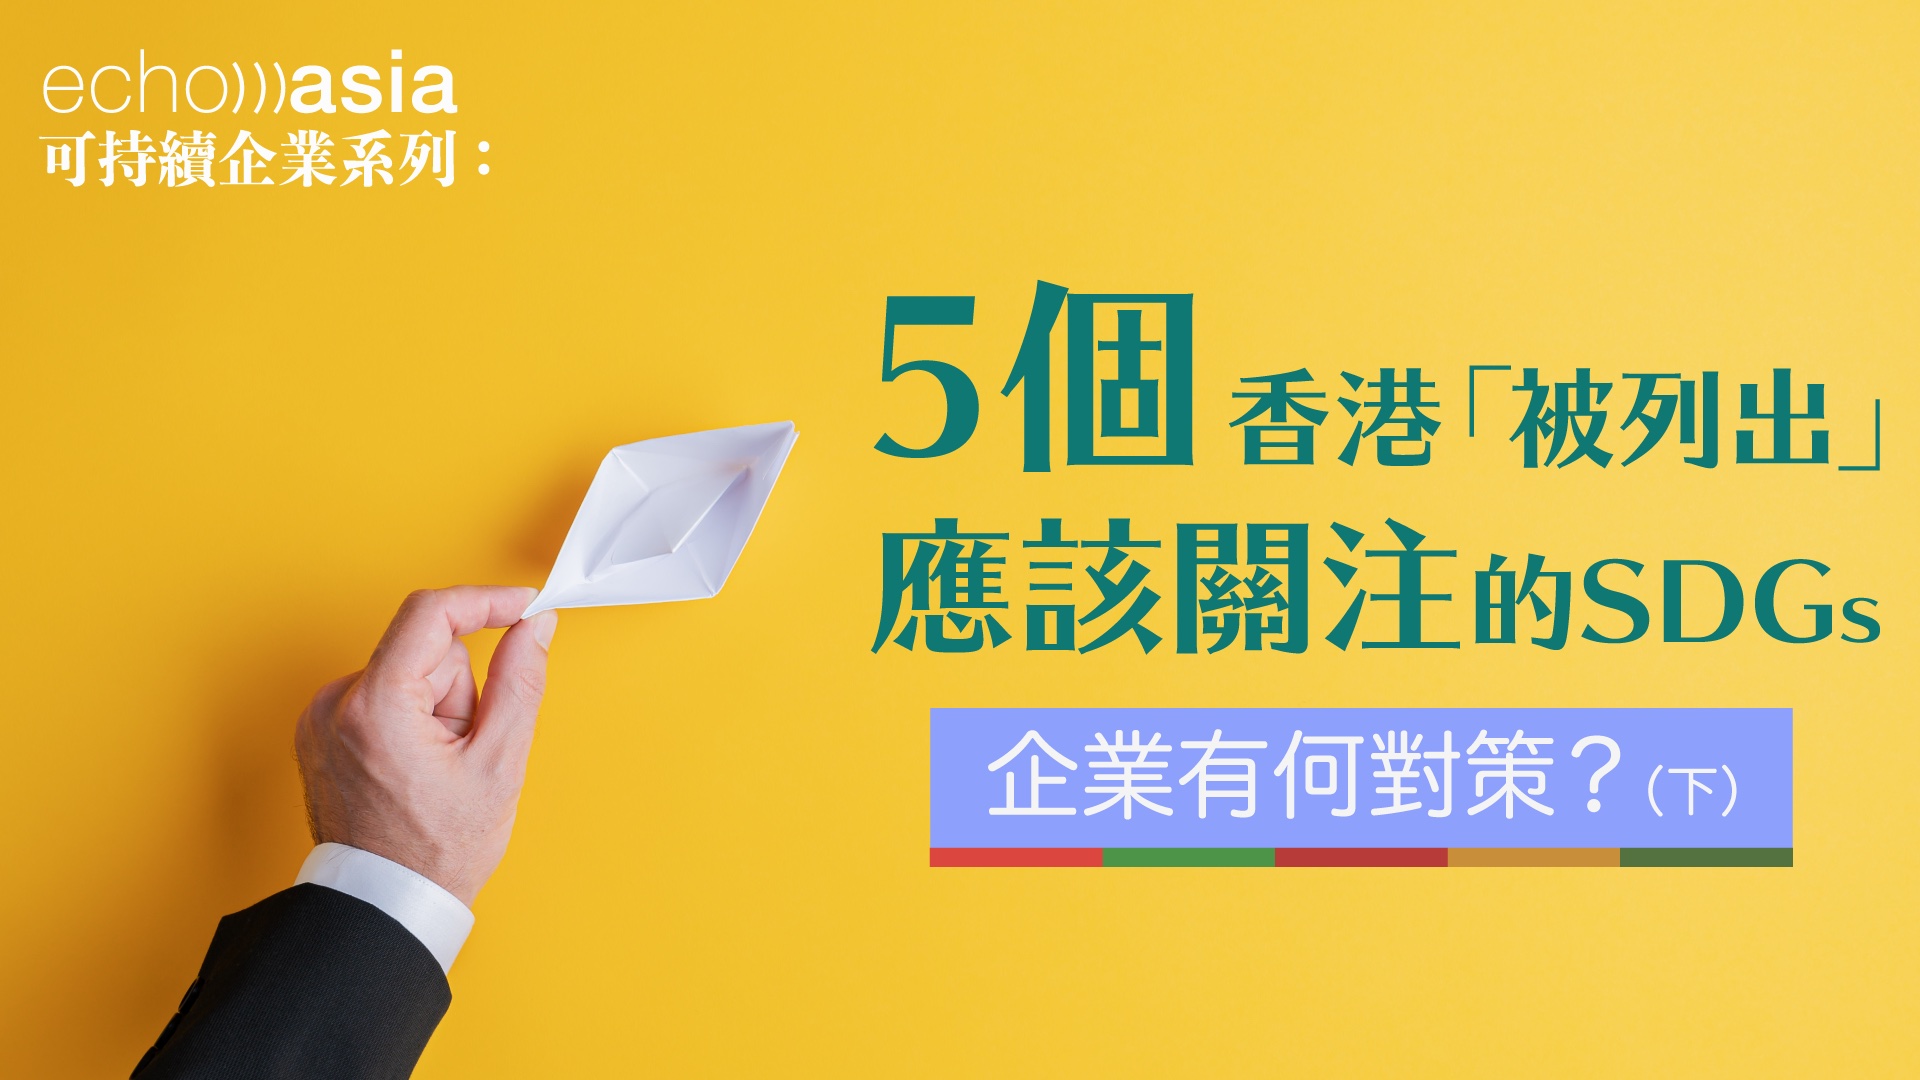 5個香港 被列出 應該關注的sdgs 企業有何對策 下 Echo Asia Communications